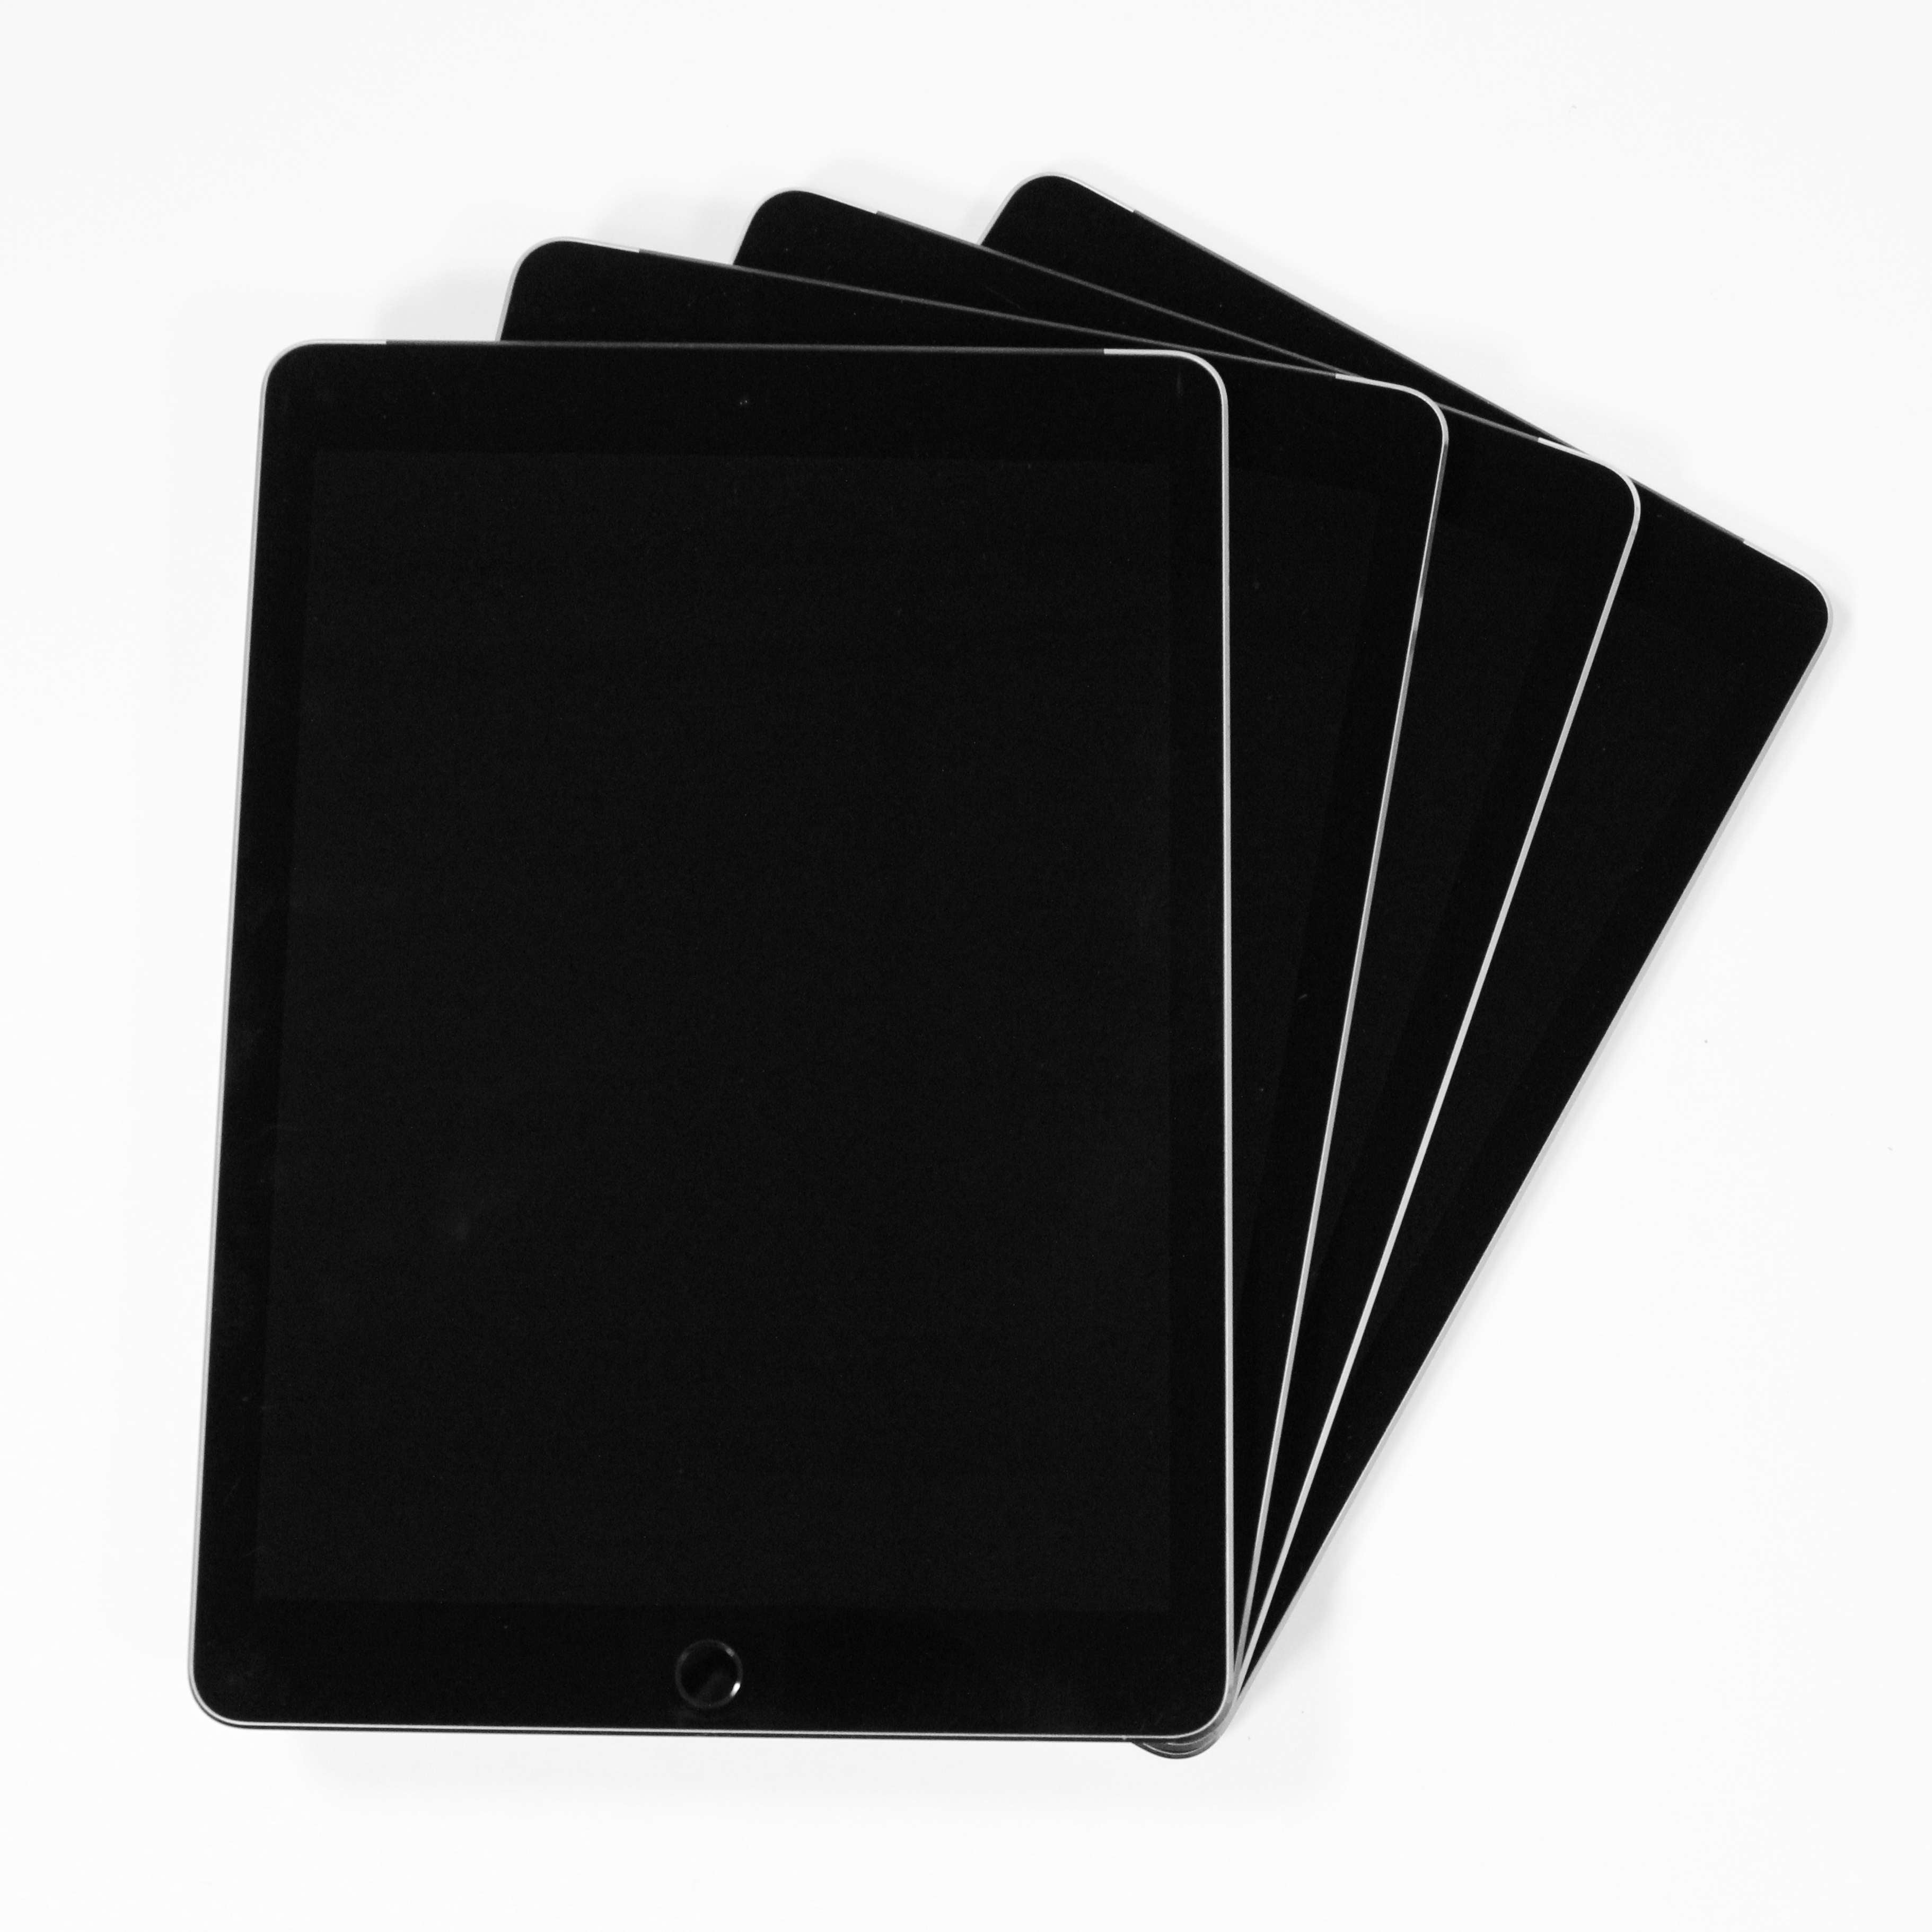 Buy Used & Refurbished Apple iPad Air 2 with Wi-Fi 32GB - Black